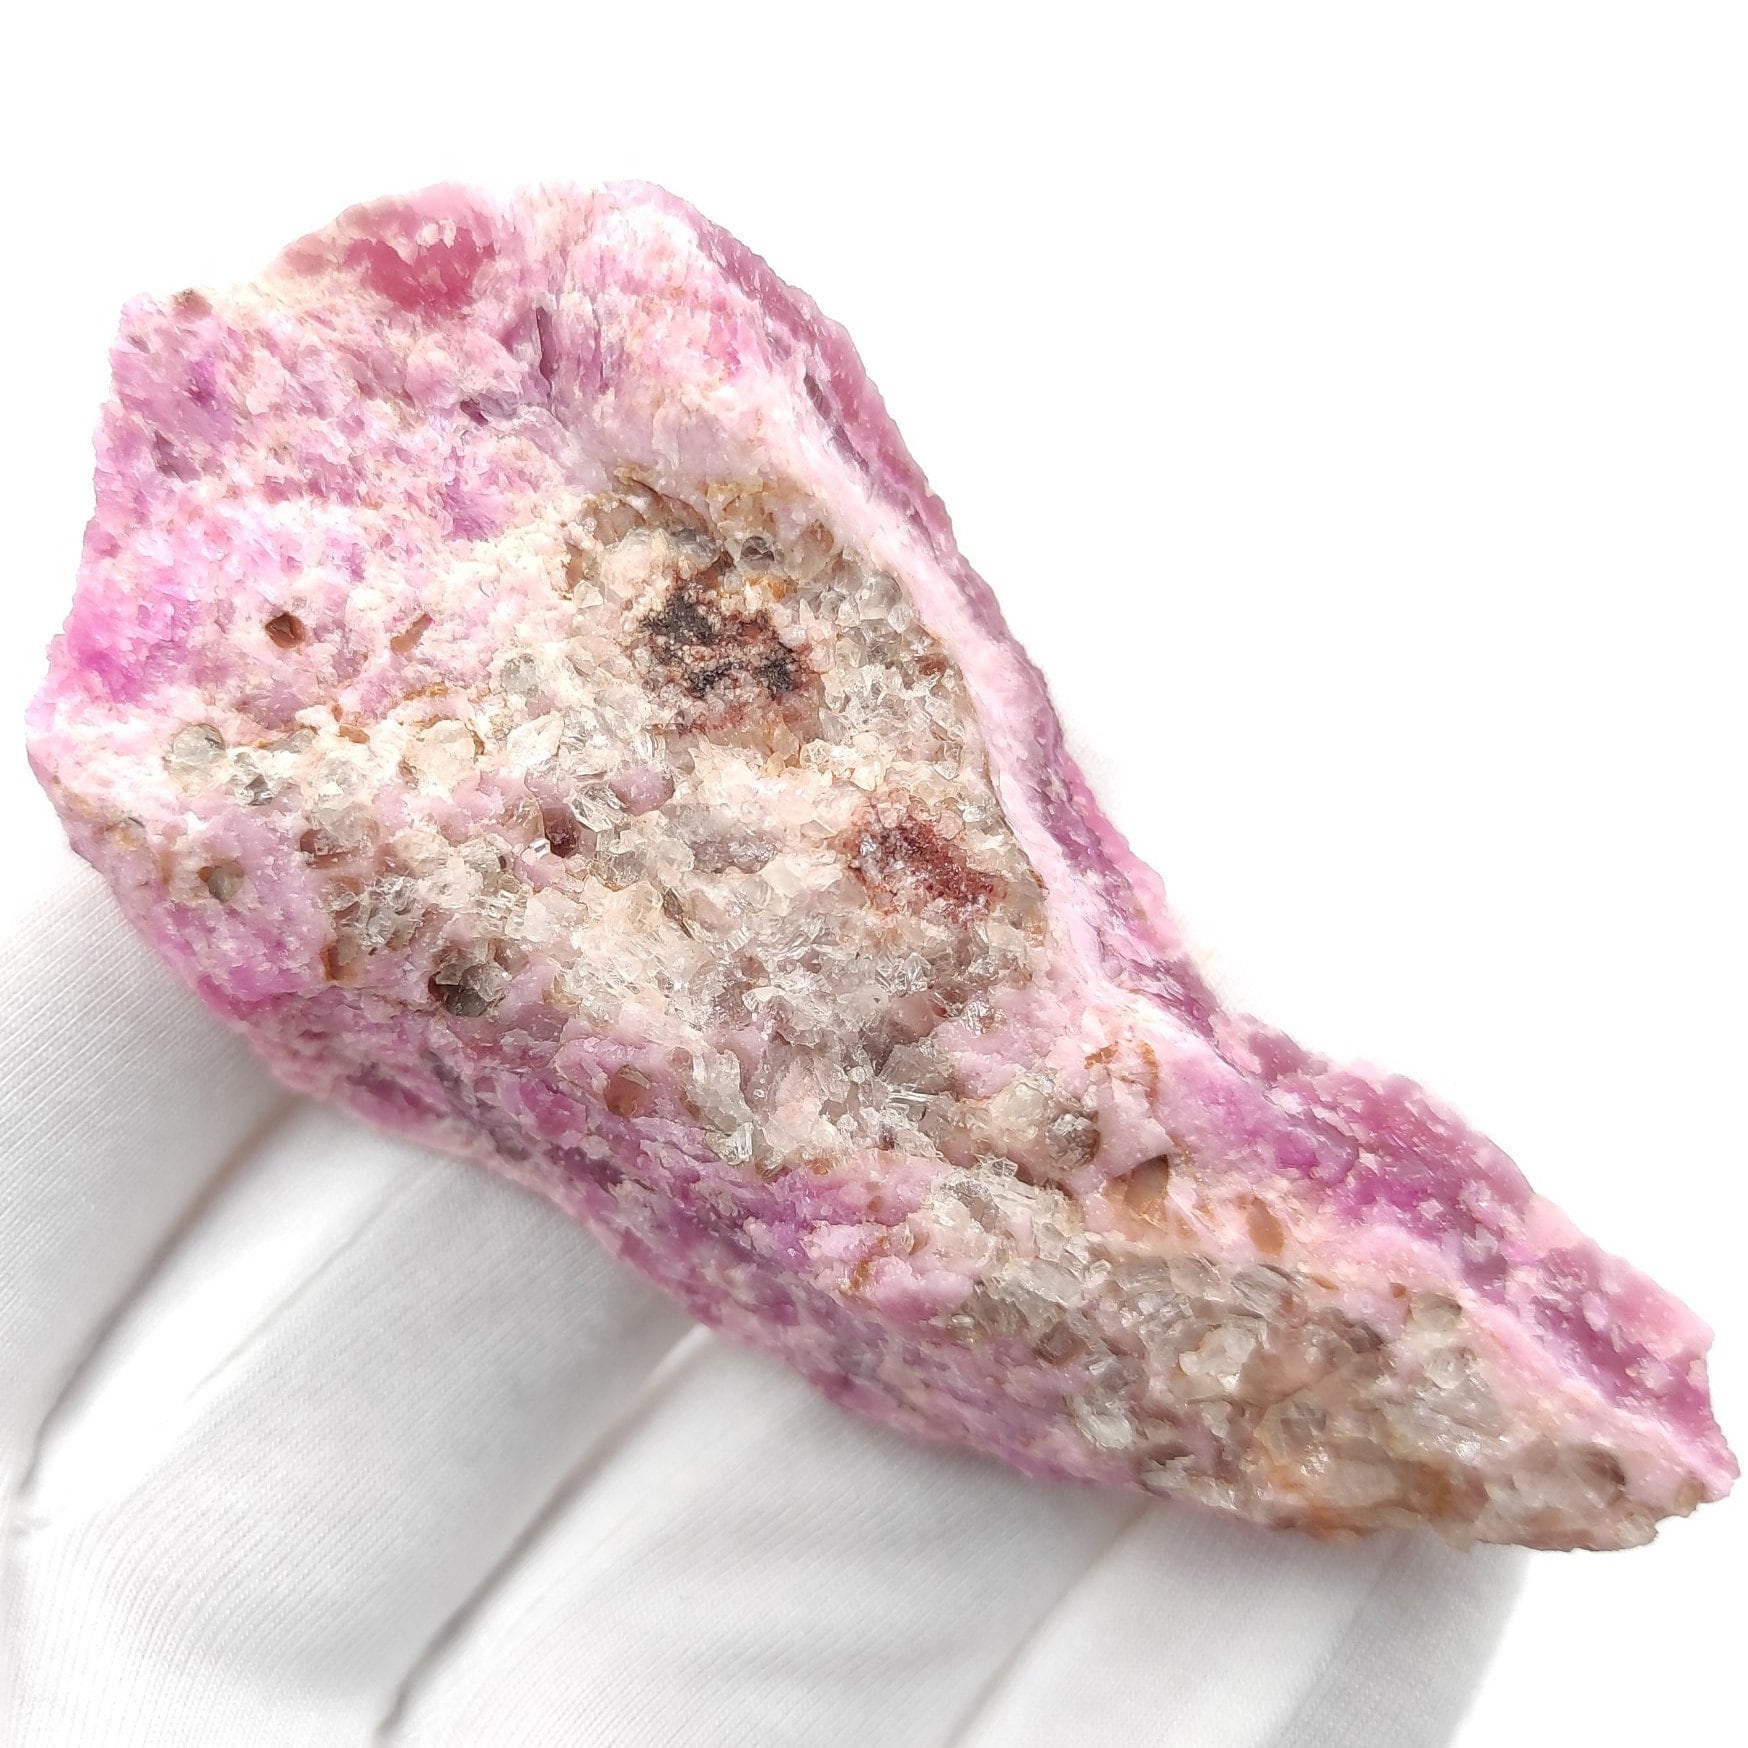 62g Cobalto Calcite - Pink Cobalt Calcite from Bou Azzer, Morocco - Salrose Stone - Cobaltocalcite Mineral Specimen - Pink Calcite Crystal